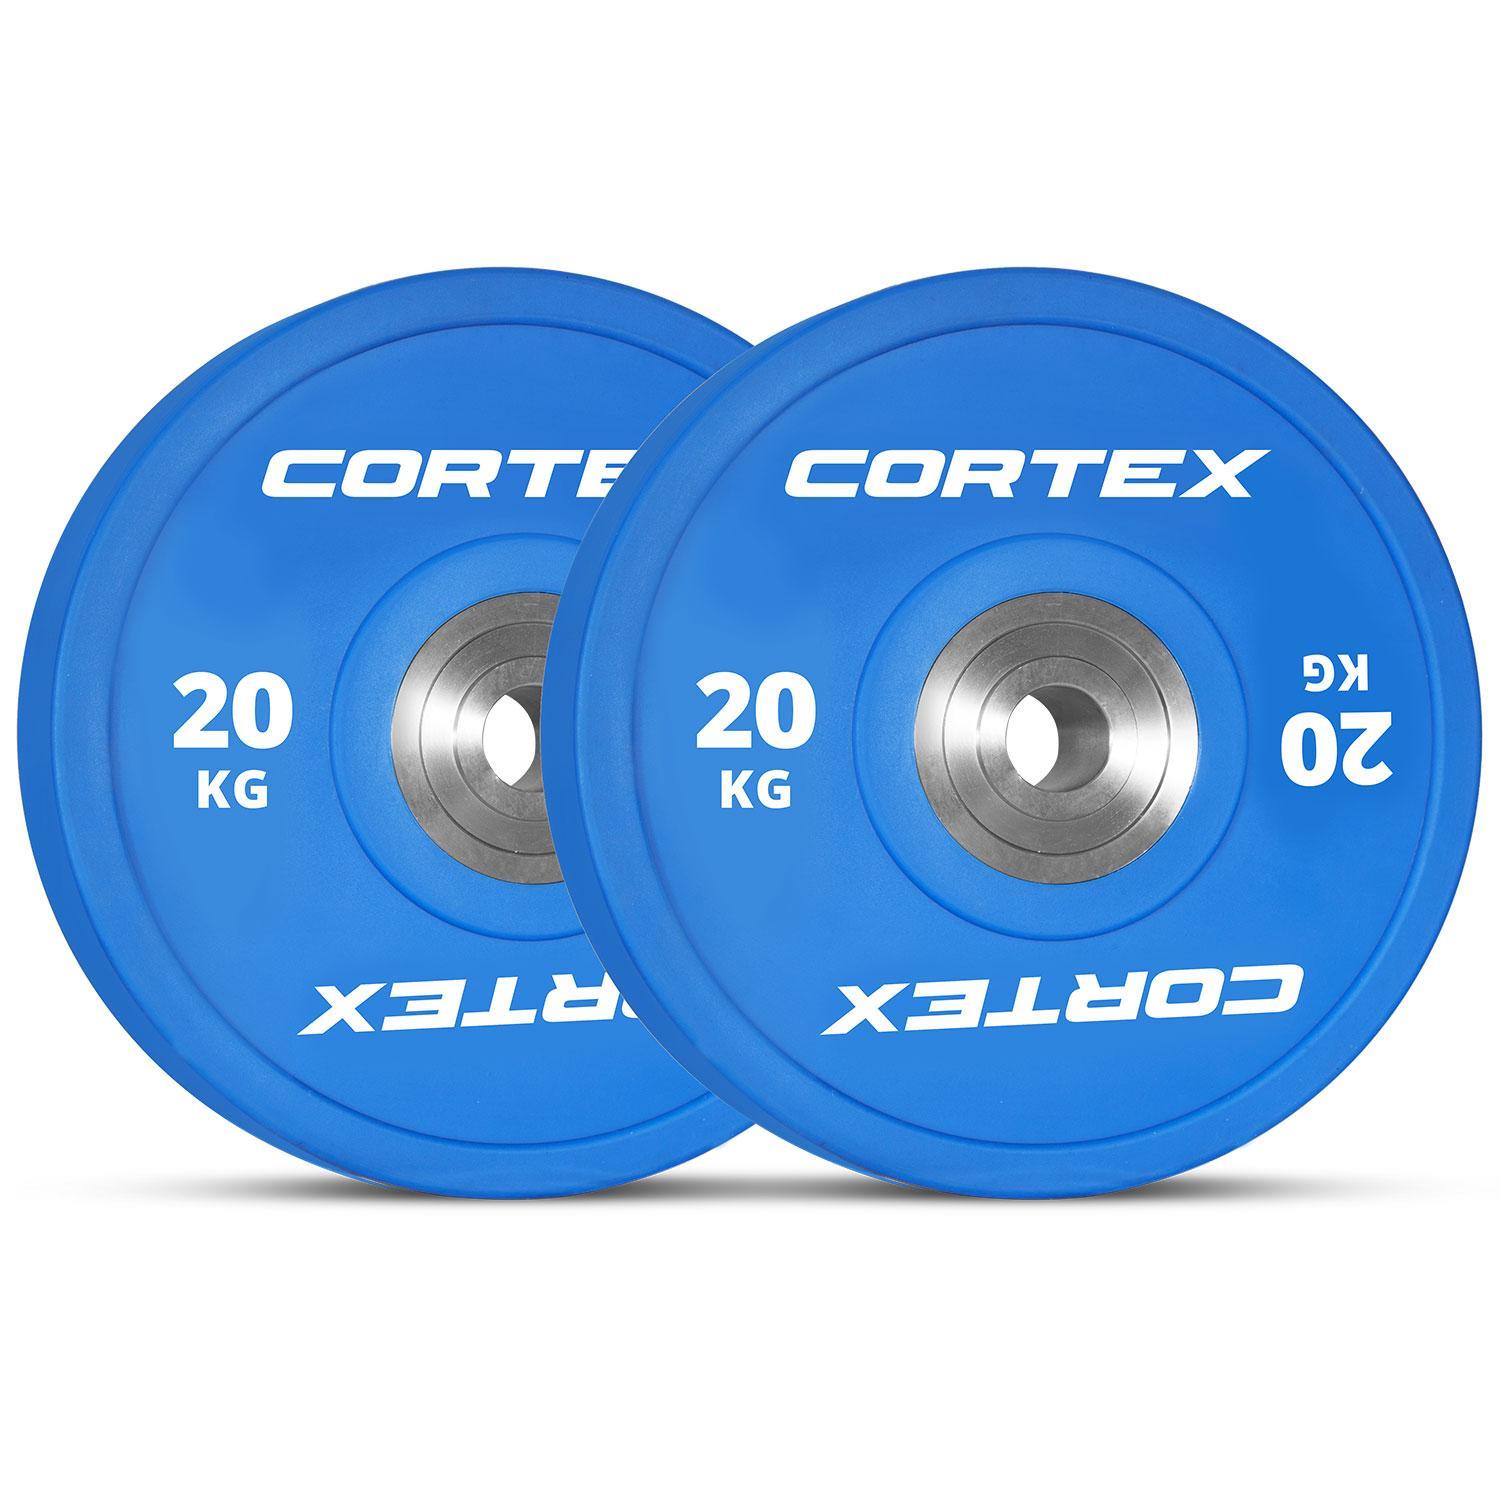 【Sale】CORTEX 20kg Competition Bumper Plates (Pair)